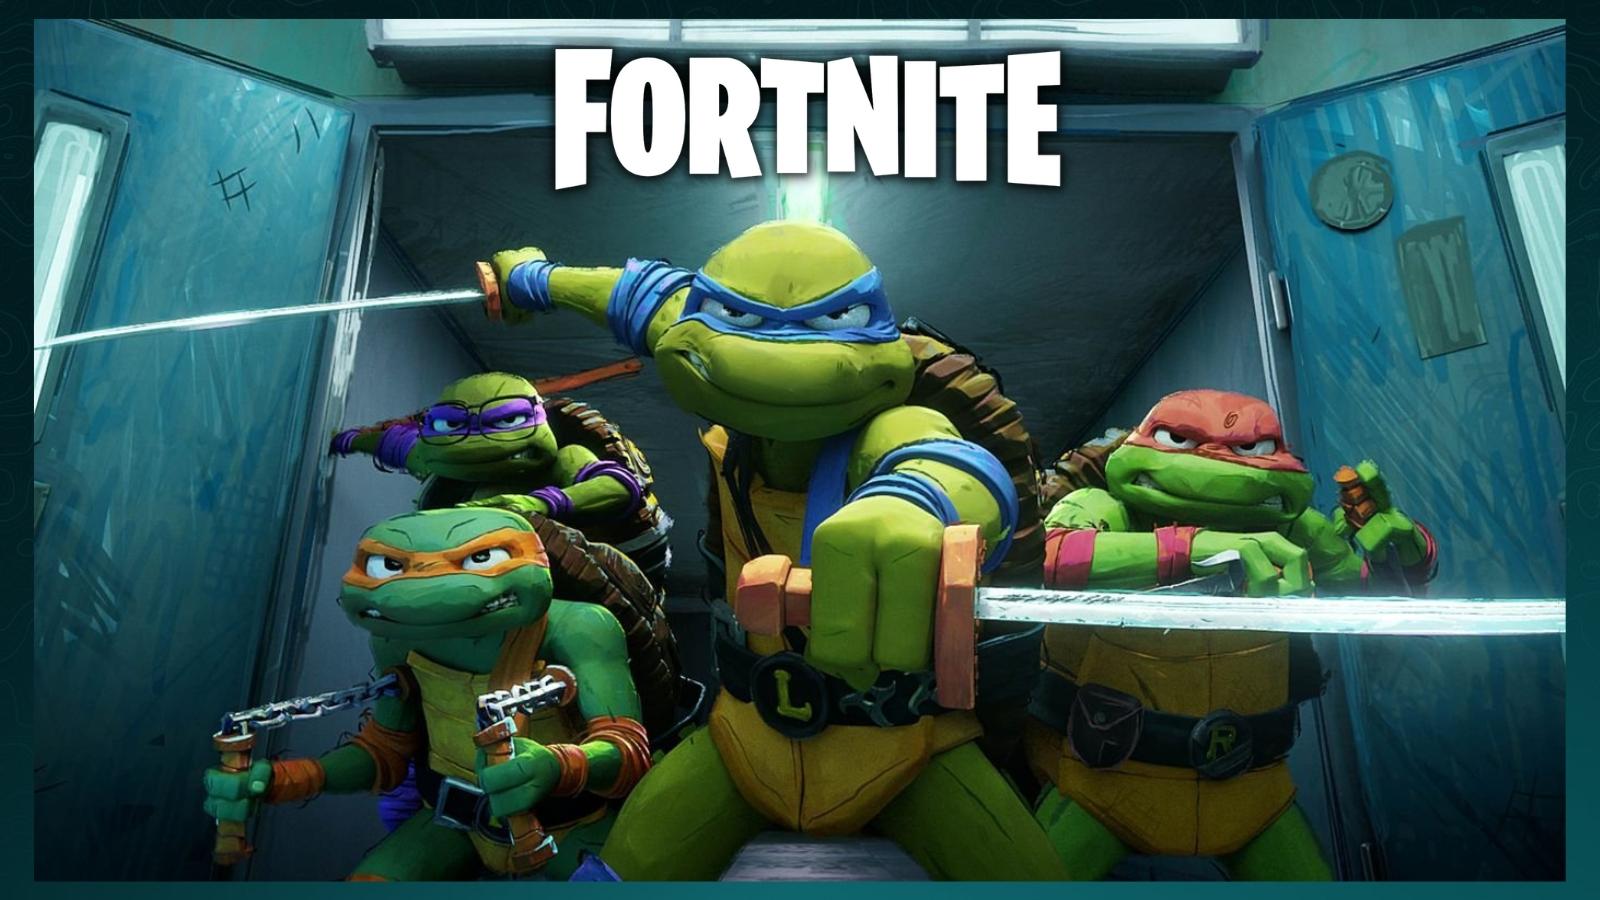 Teenage Mutant Ninja Turtles Fortnite skins leaked amid new collab